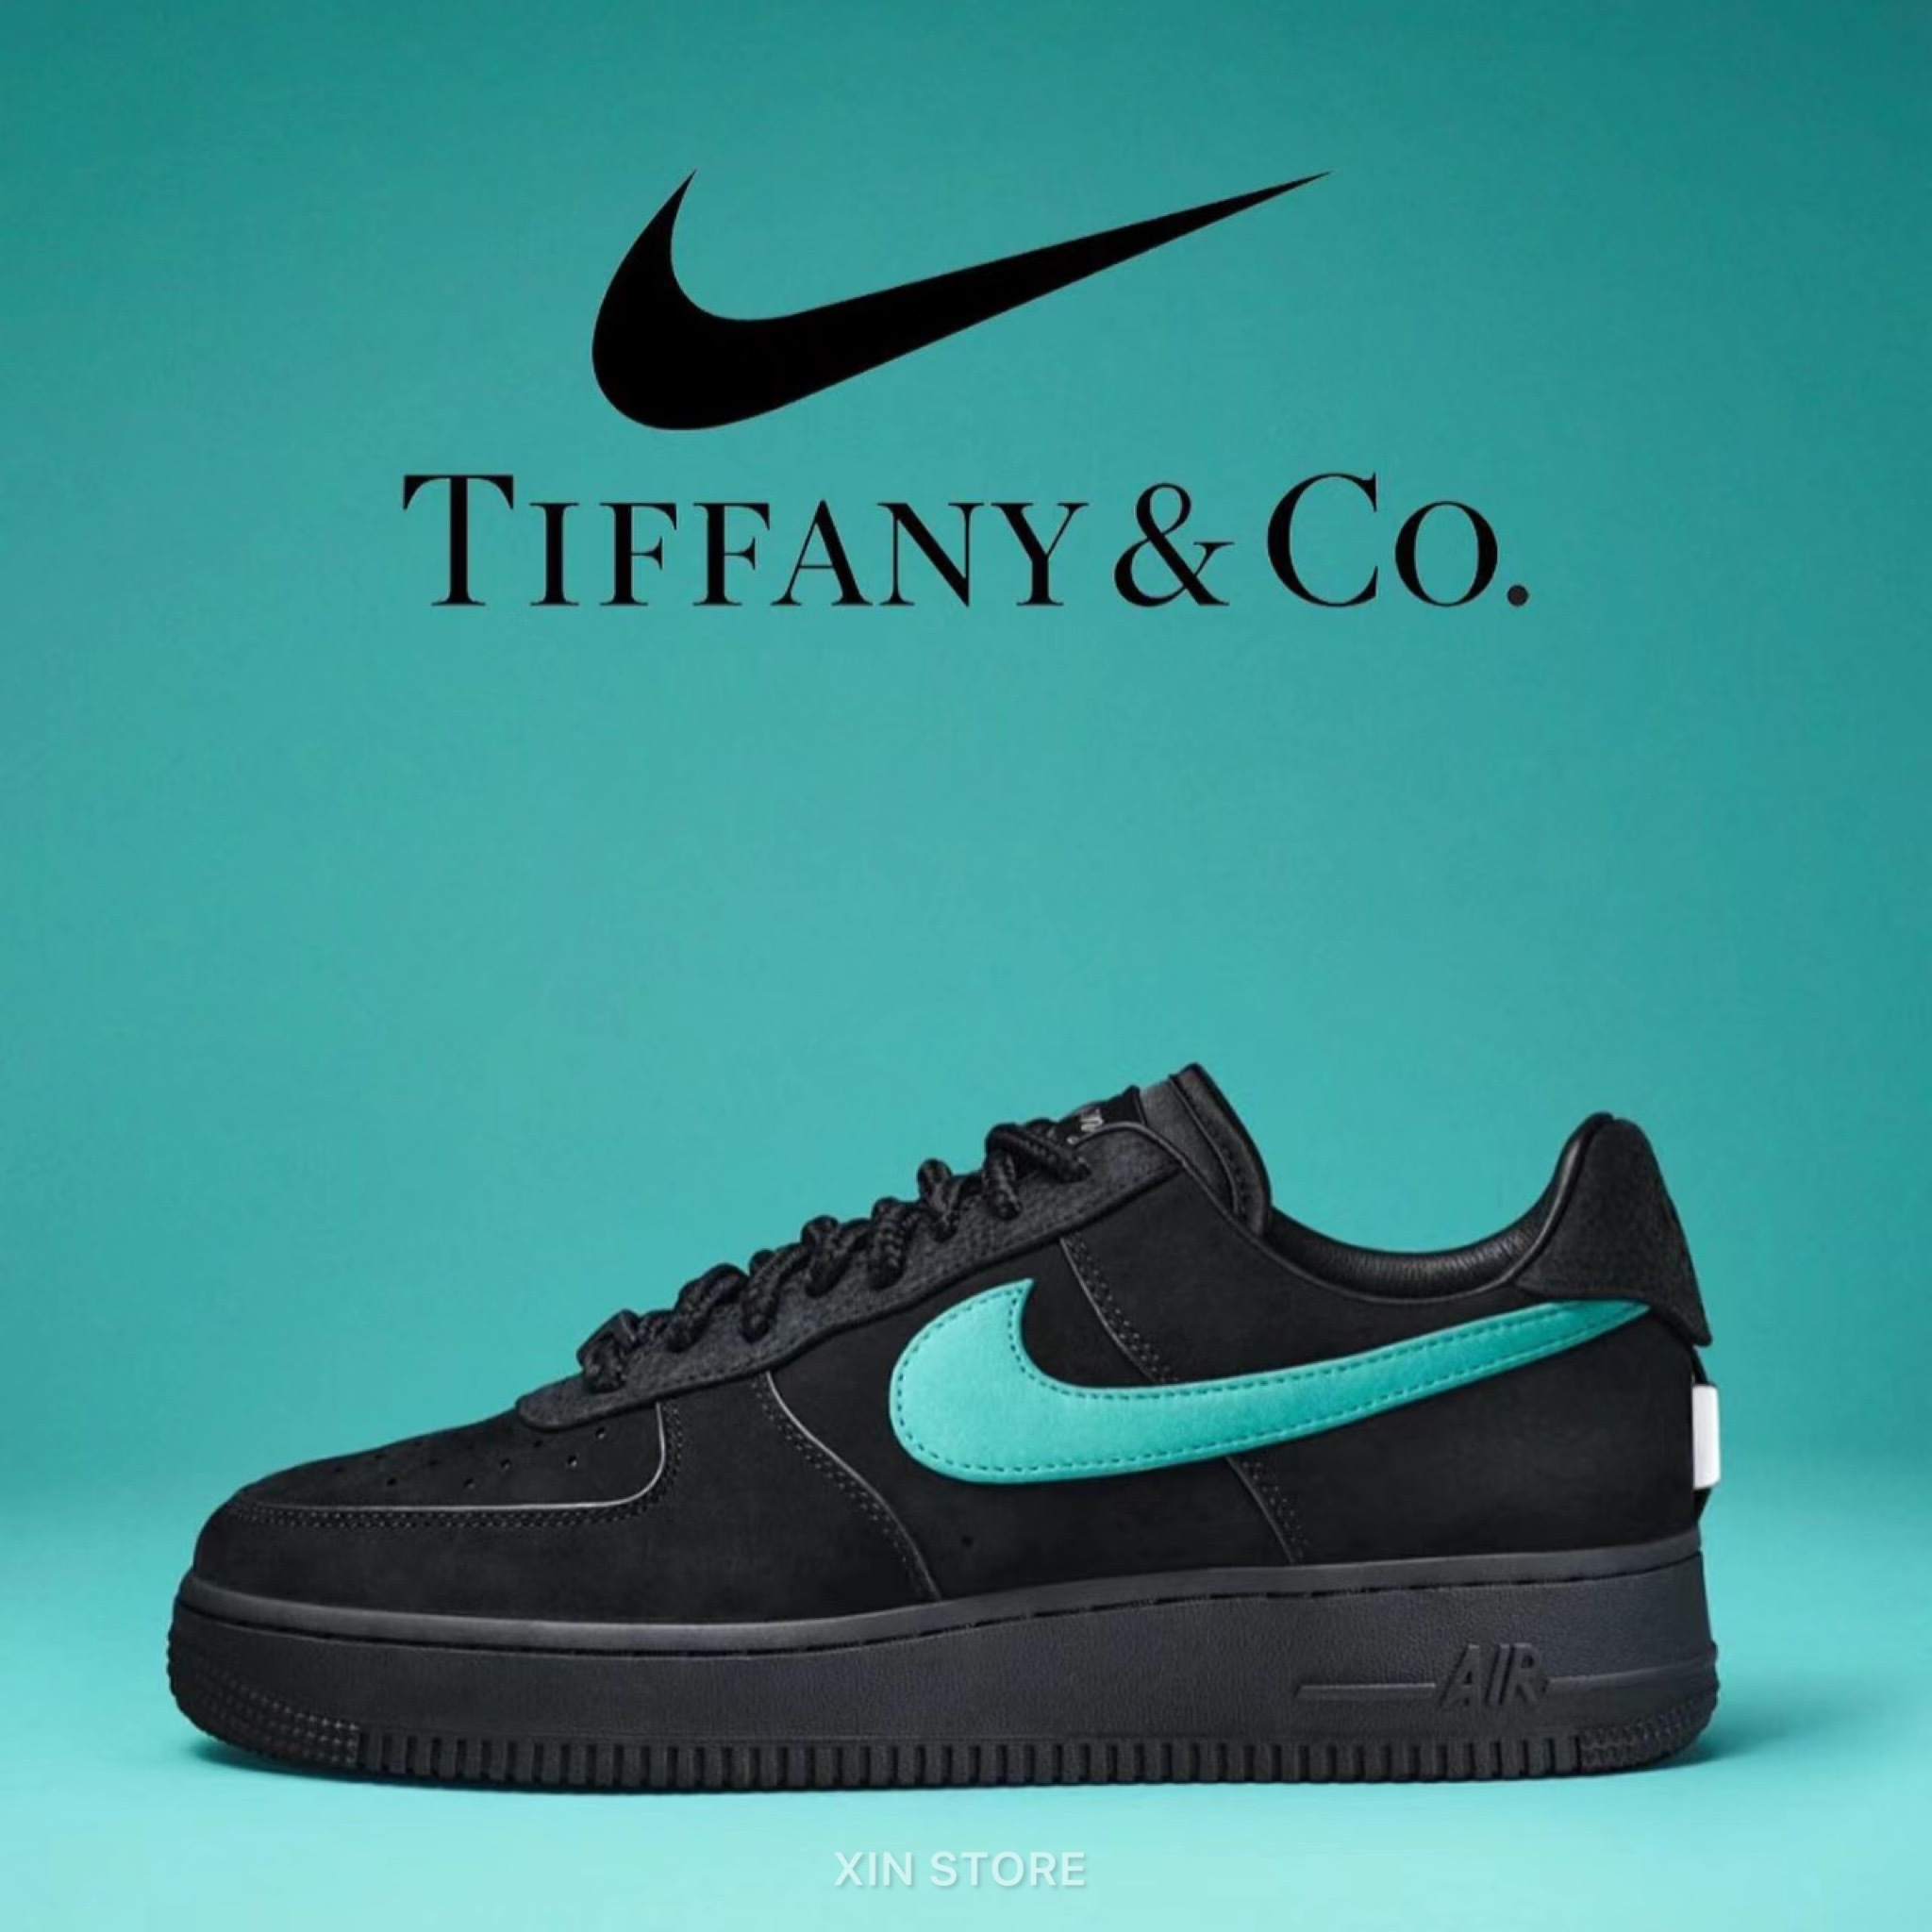 Nike Air Force 1 x Tiffany & Co. 